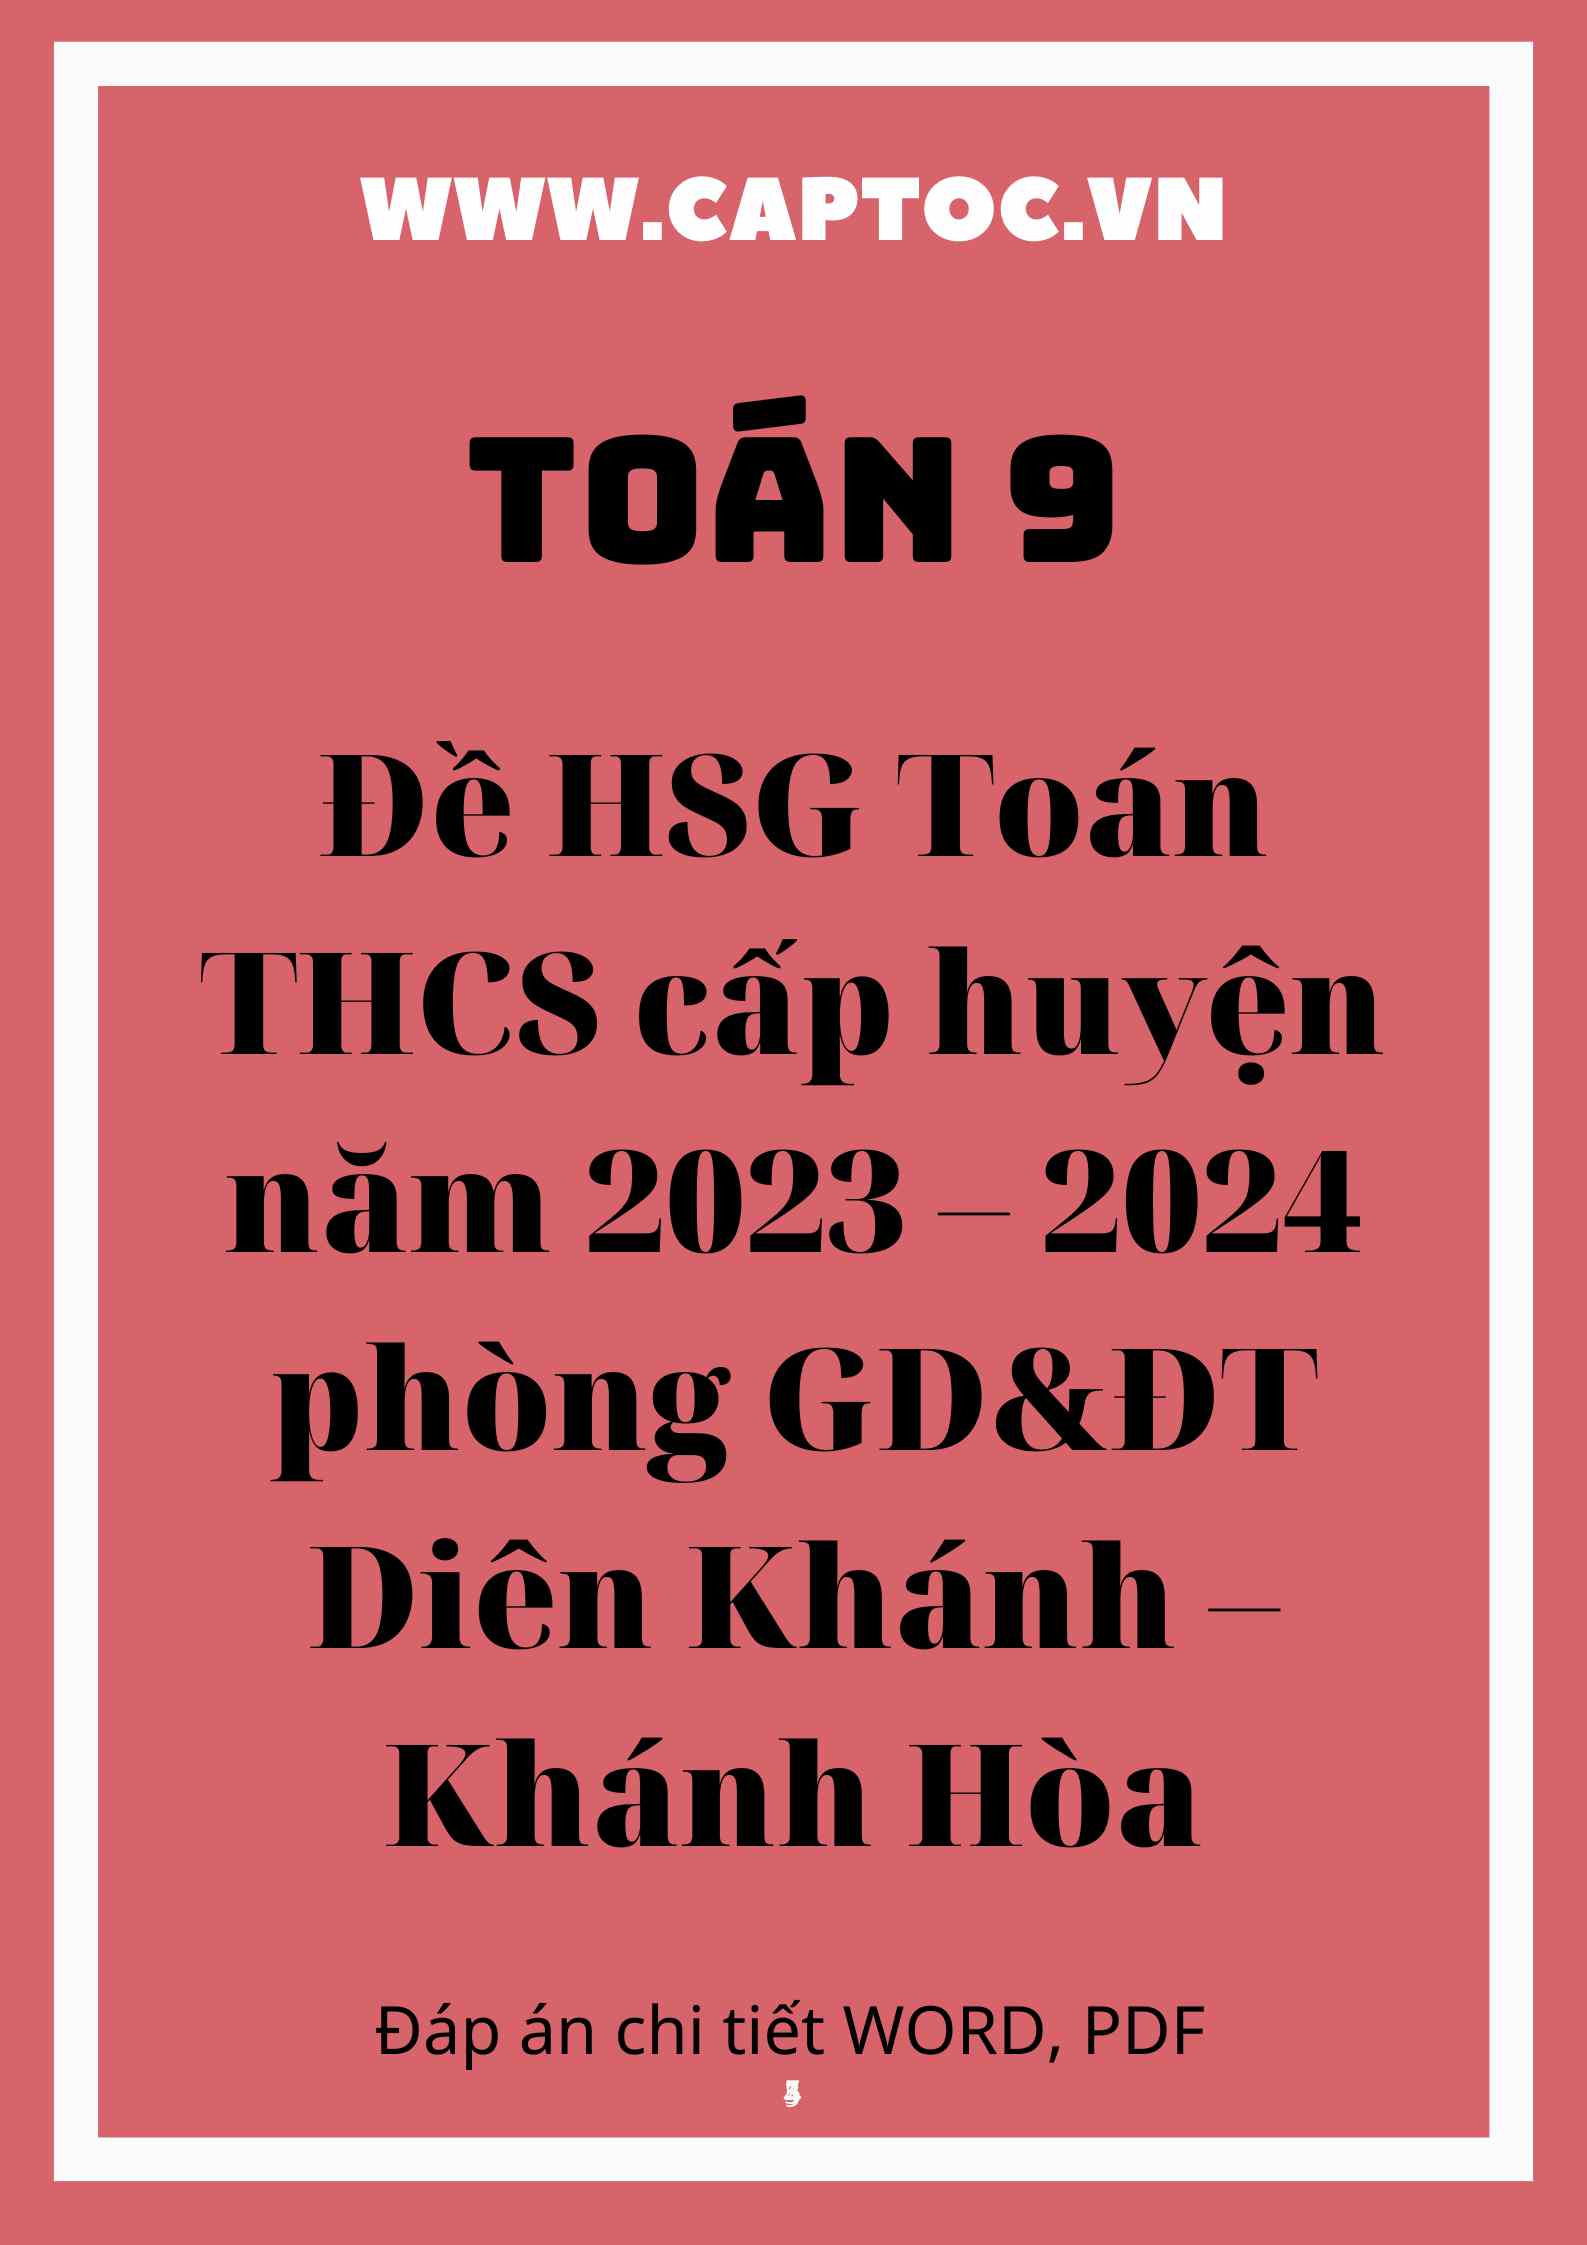 Đề HSG Toán THCS cấp huyện năm 2023 – 2024 phòng GD&ĐT Diên Khánh – Khánh Hòa